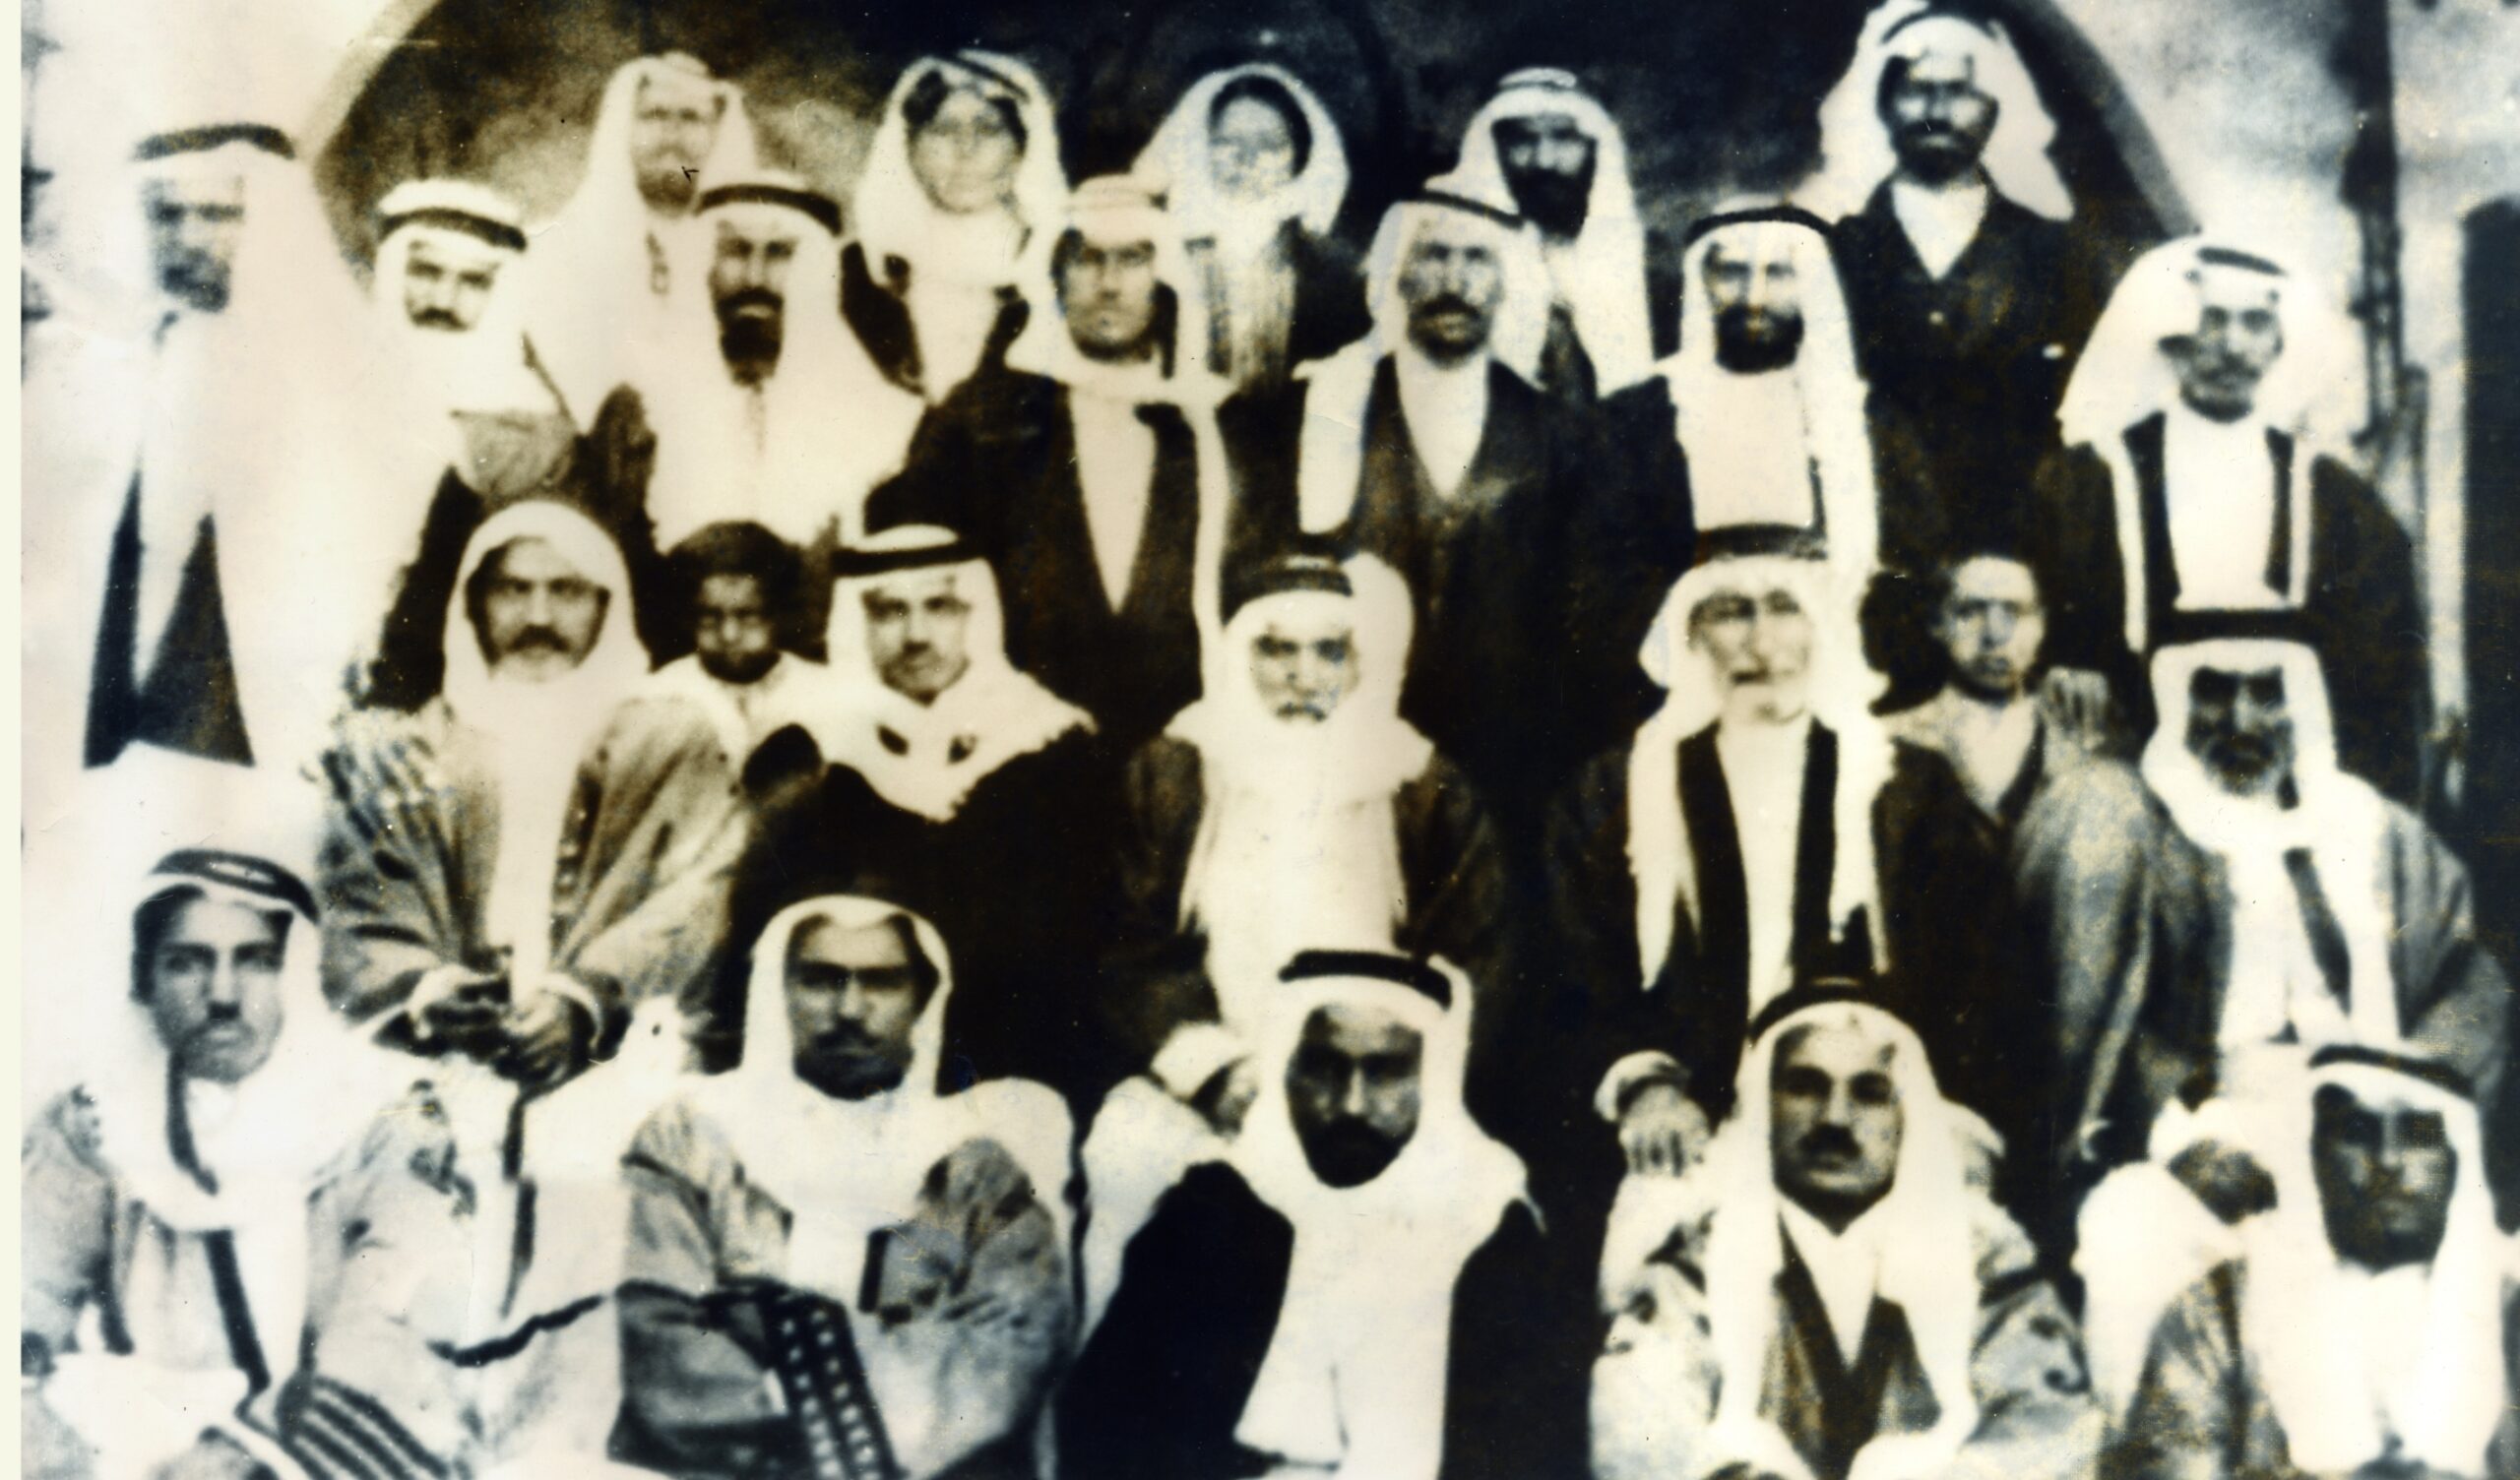 التاريخ السوري المعاصر - شخصيات من بصرى الشام وآل المقداد عام 1938